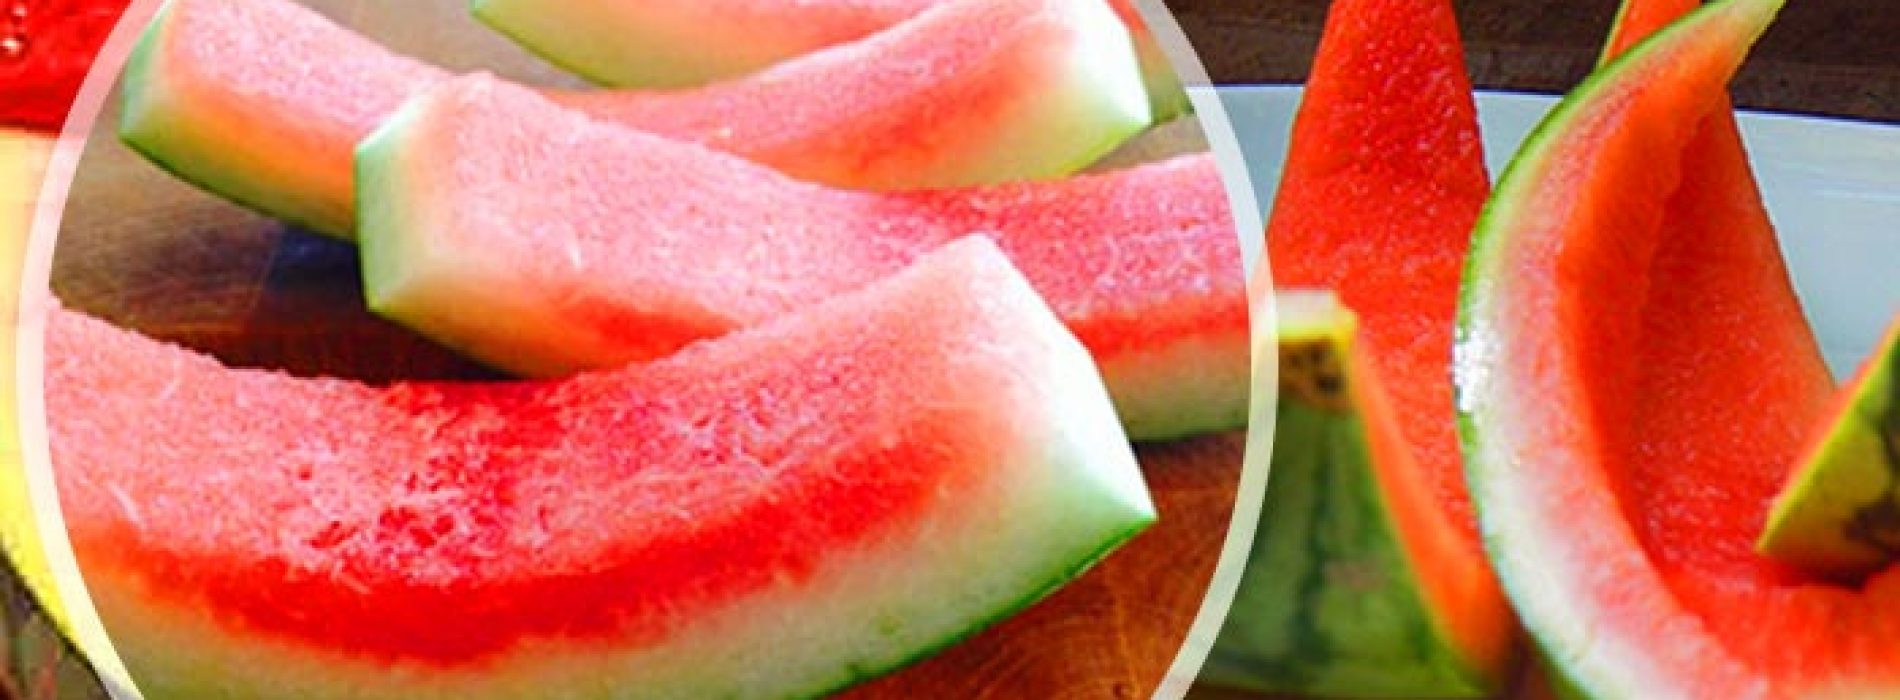 De gezondheidsvoordelen van het juicen van watermeloen met de schil